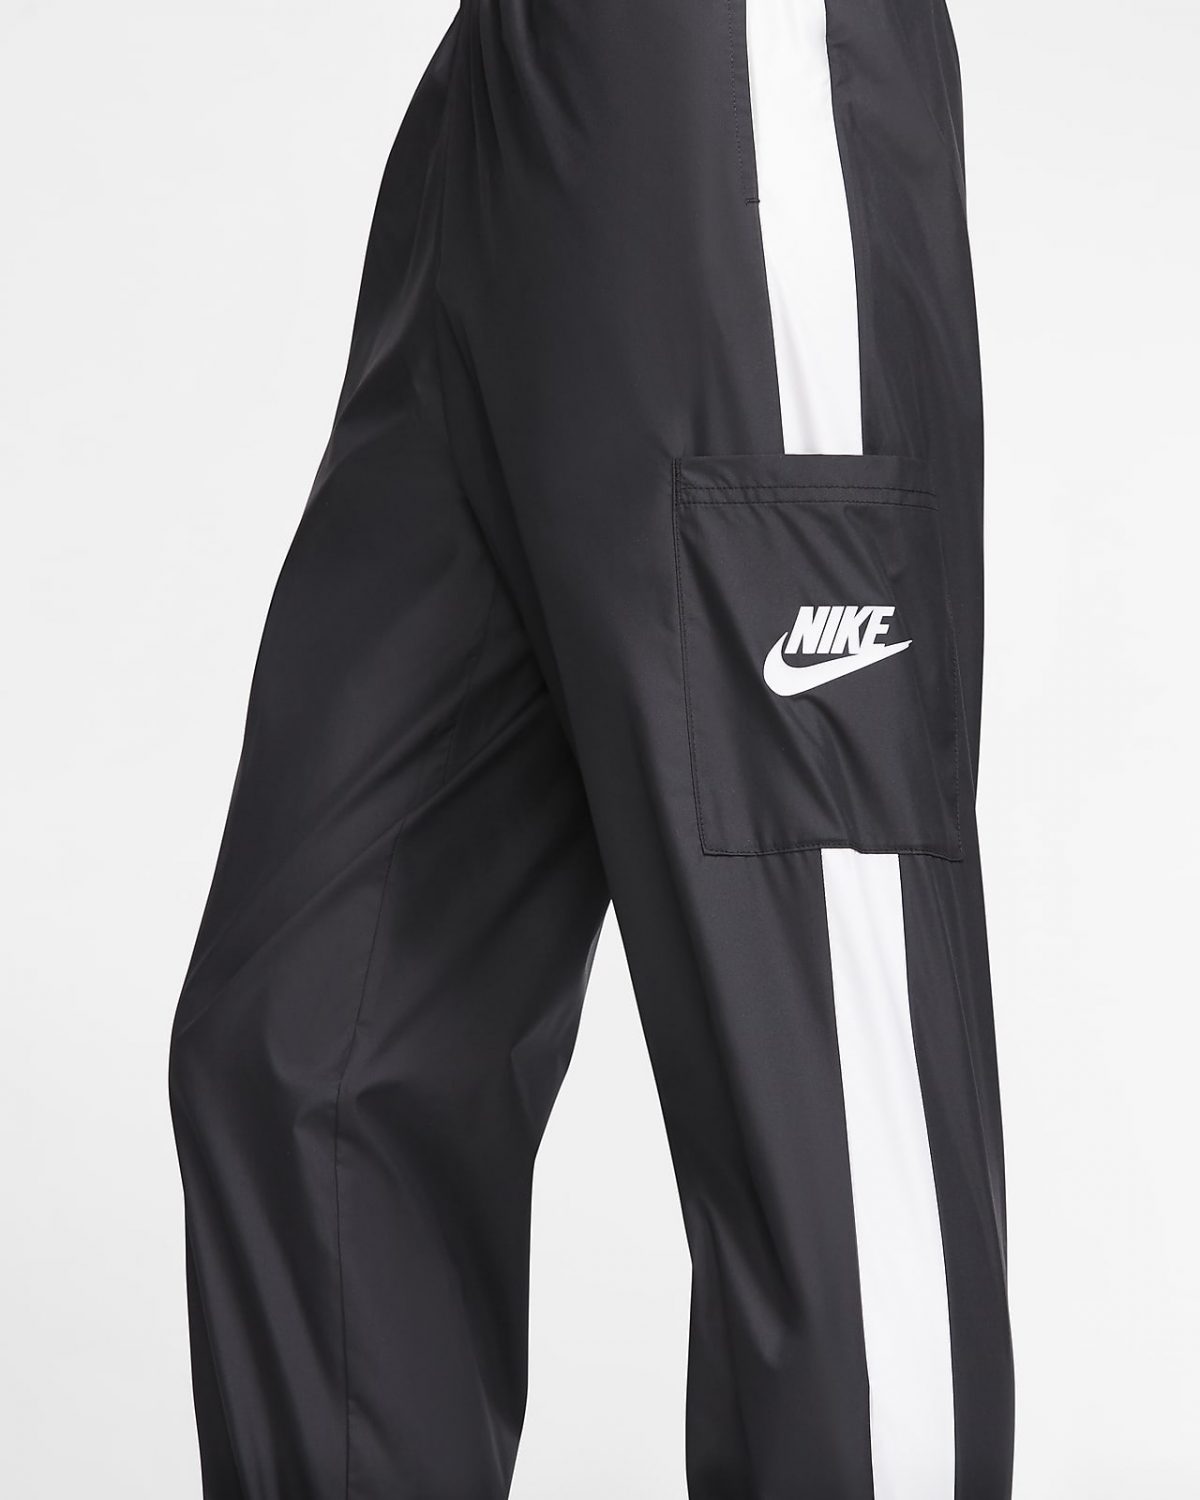 Женские брюки Nike Sportswear